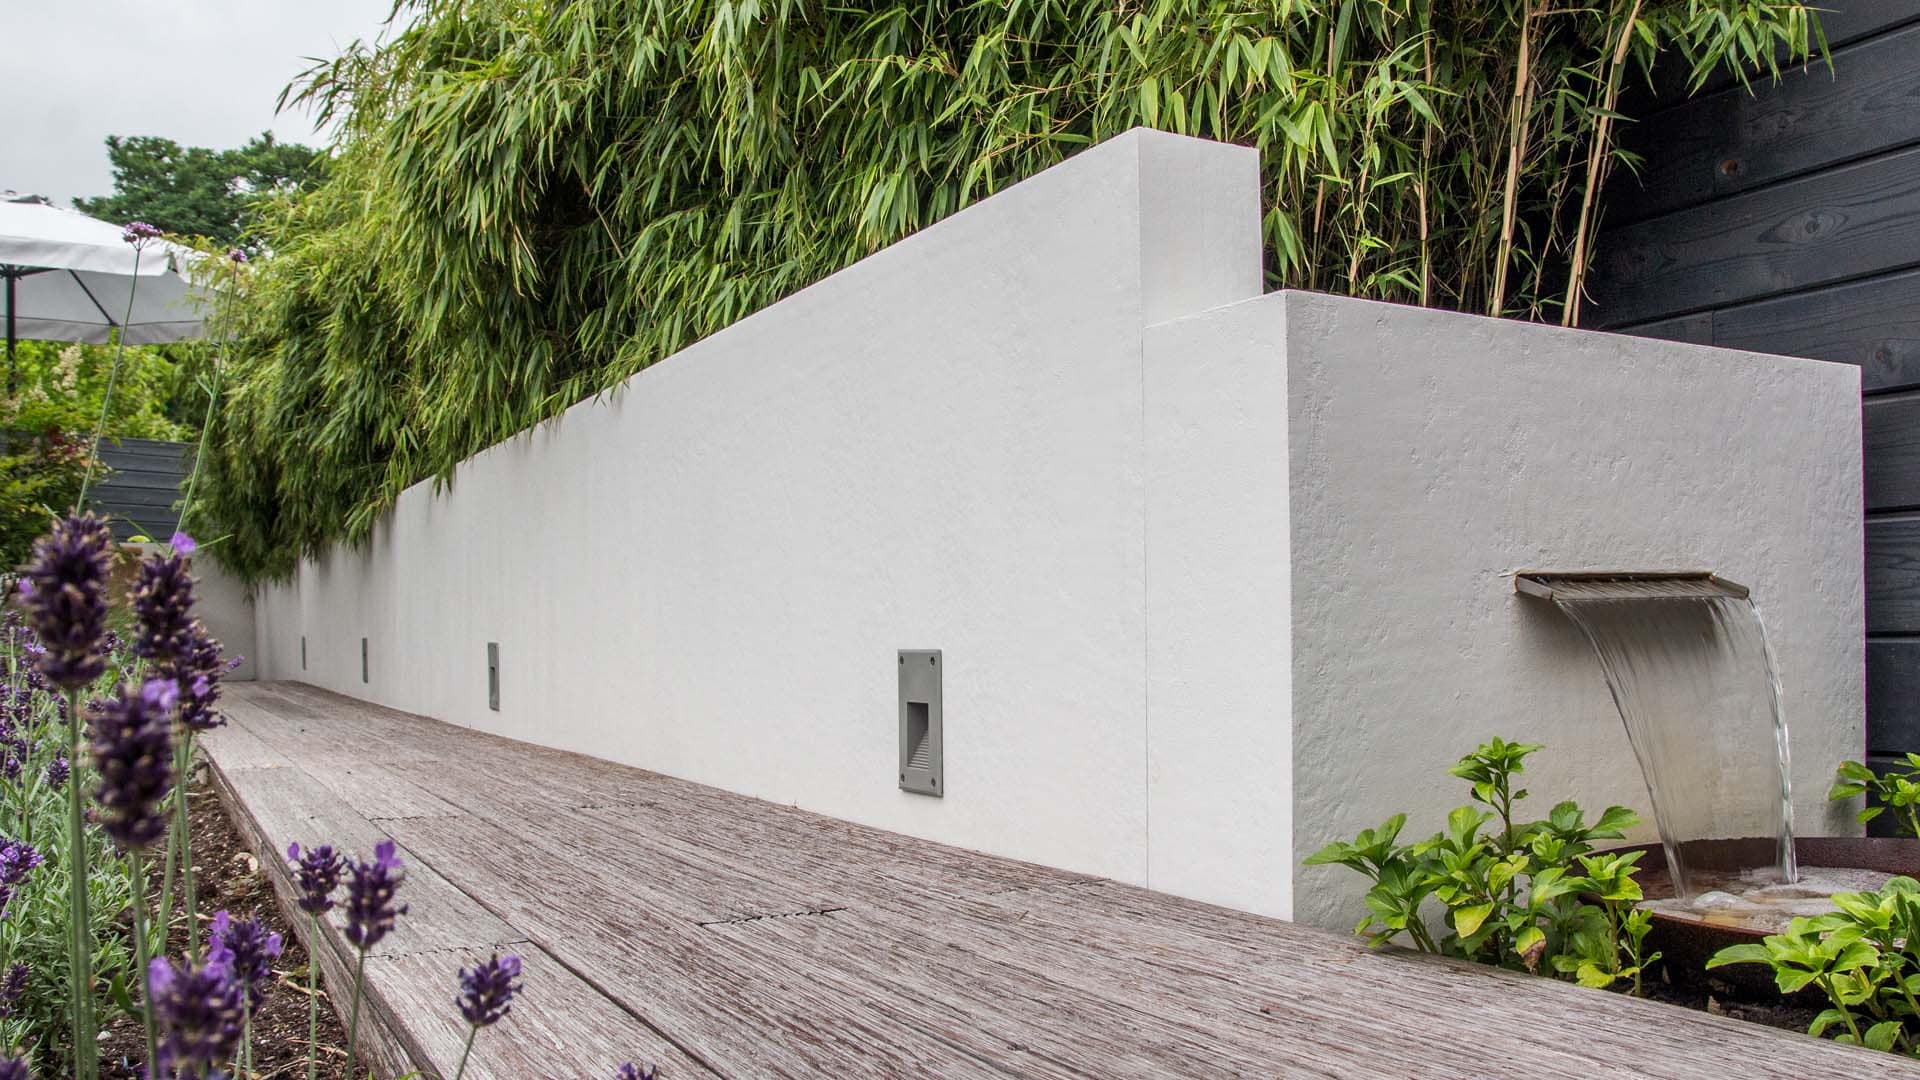 Modernes Gartengestaltungselement mit weißer Wand, integriertem Wasserfall, umgeben von Bambuspflanzen und Holzboden im Vordergrund.